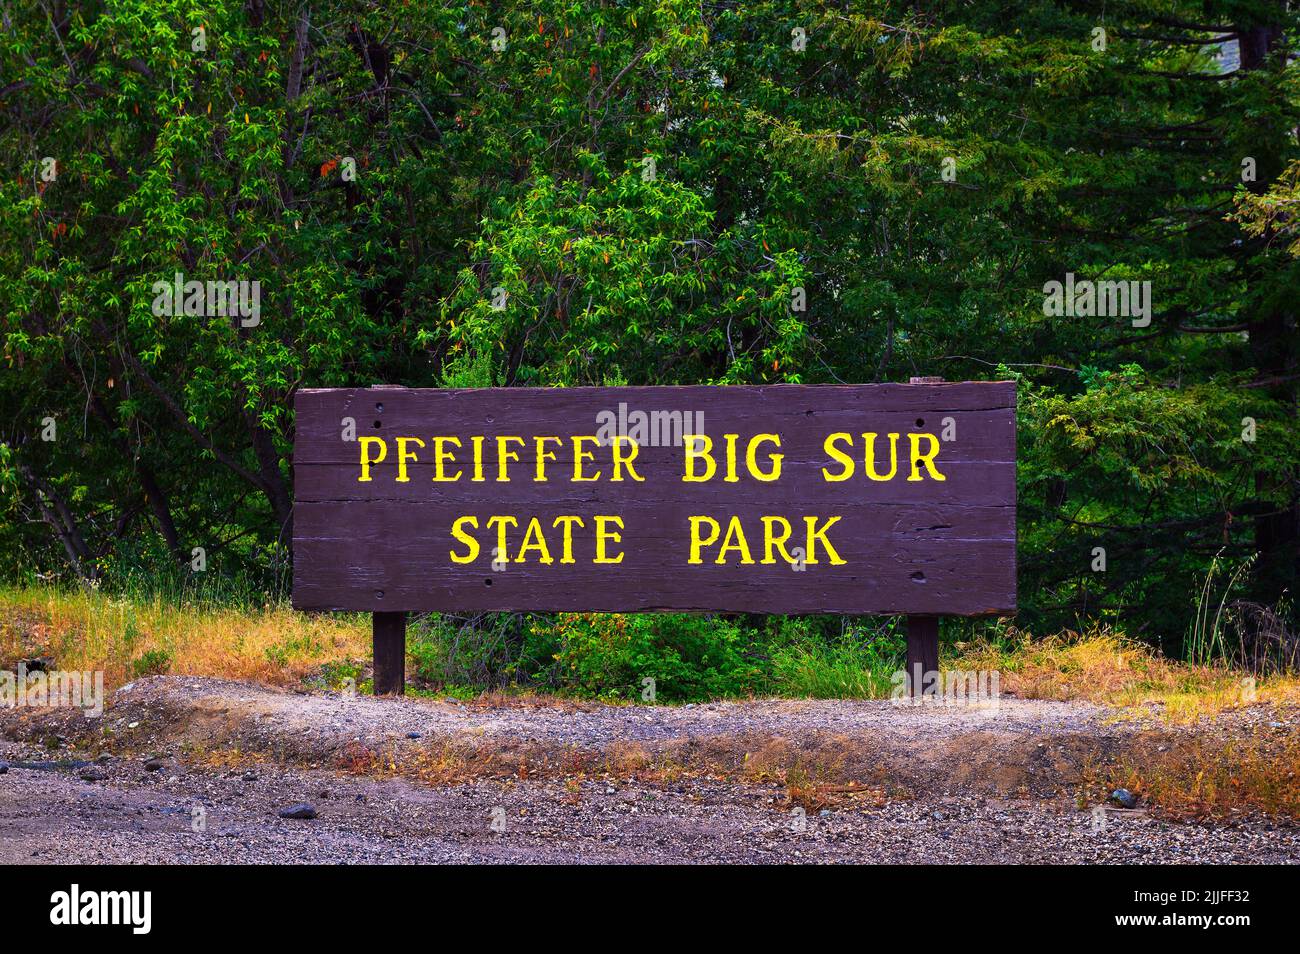 Begrüßungsschild am Eingang zum Pfeiffer Big Sur State Park in Kalifornien Stockfoto